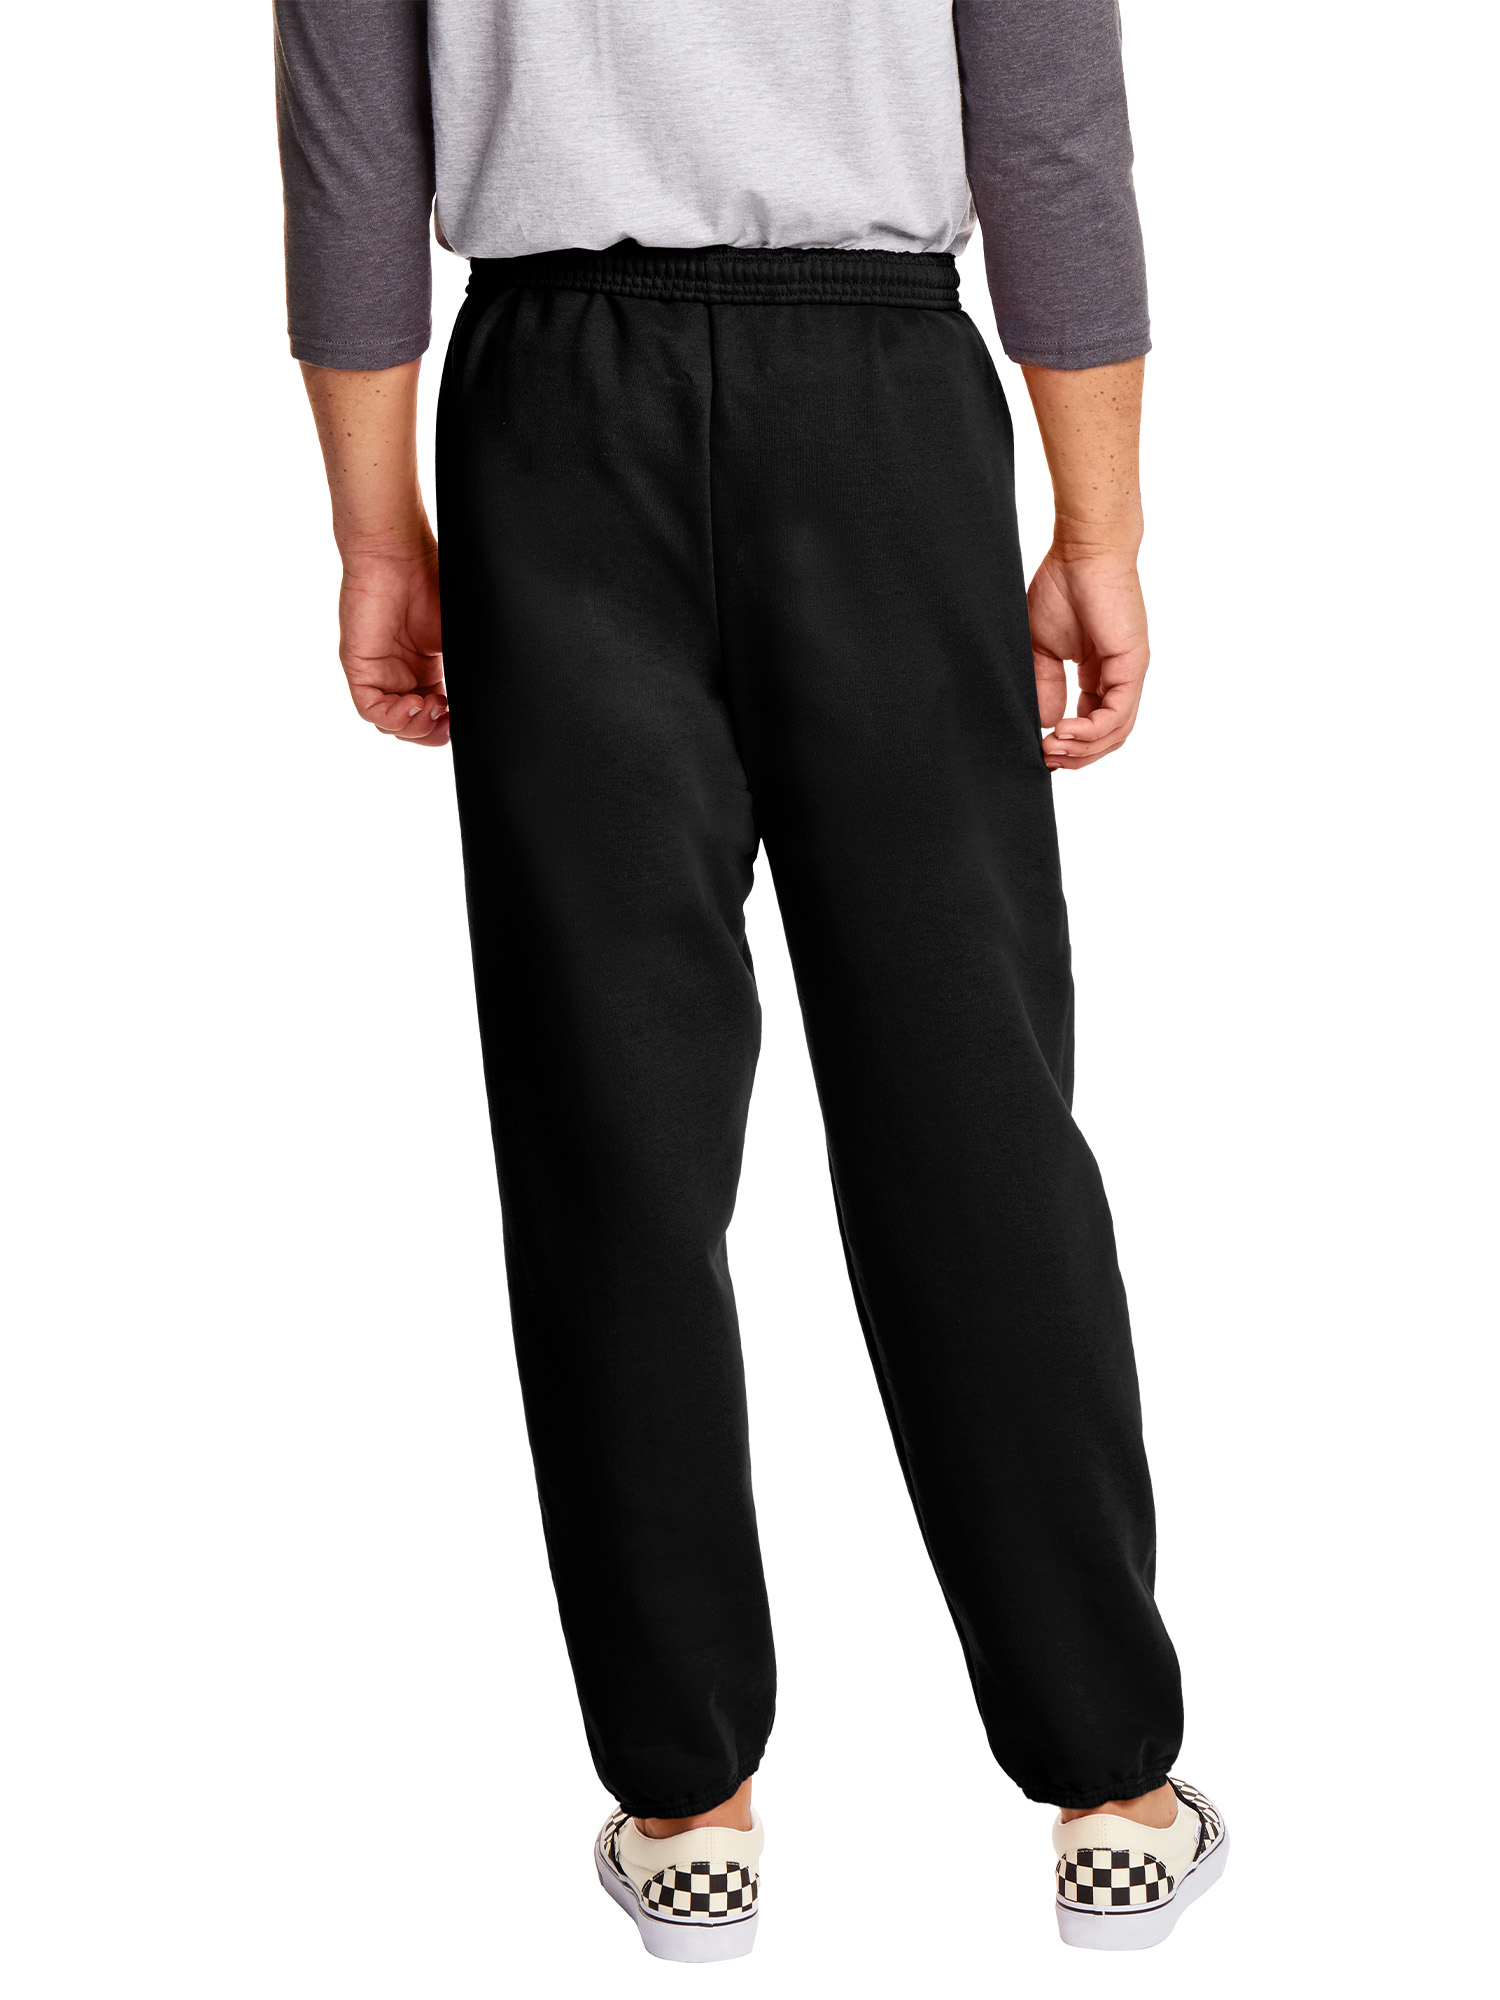 Hanes Men's and Big Men's EcoSmart Fleece Sweatpants, up to Size 3XL - image 2 of 7